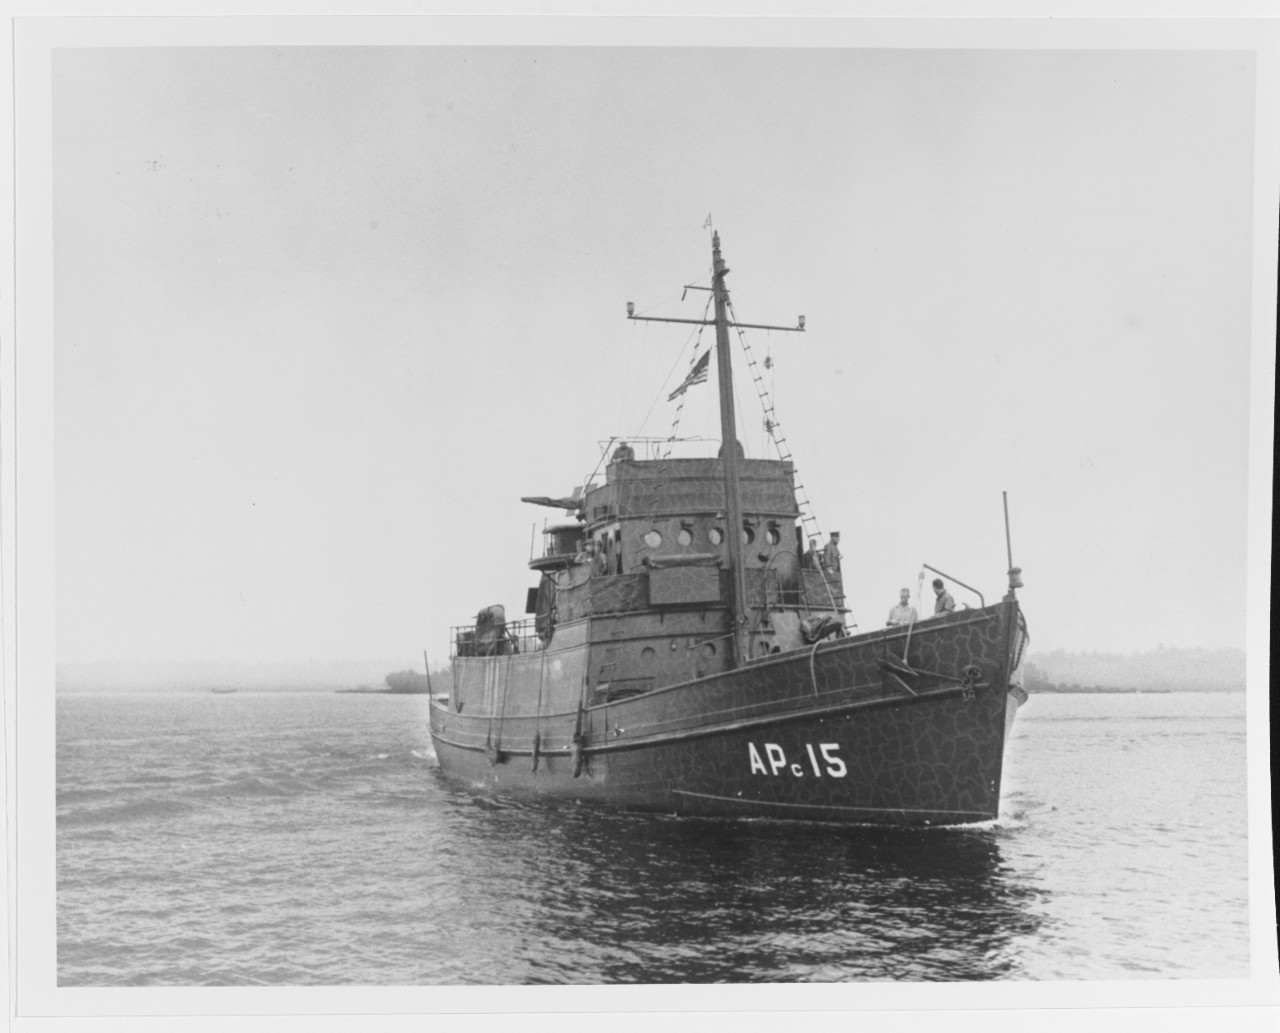 USS APc-15